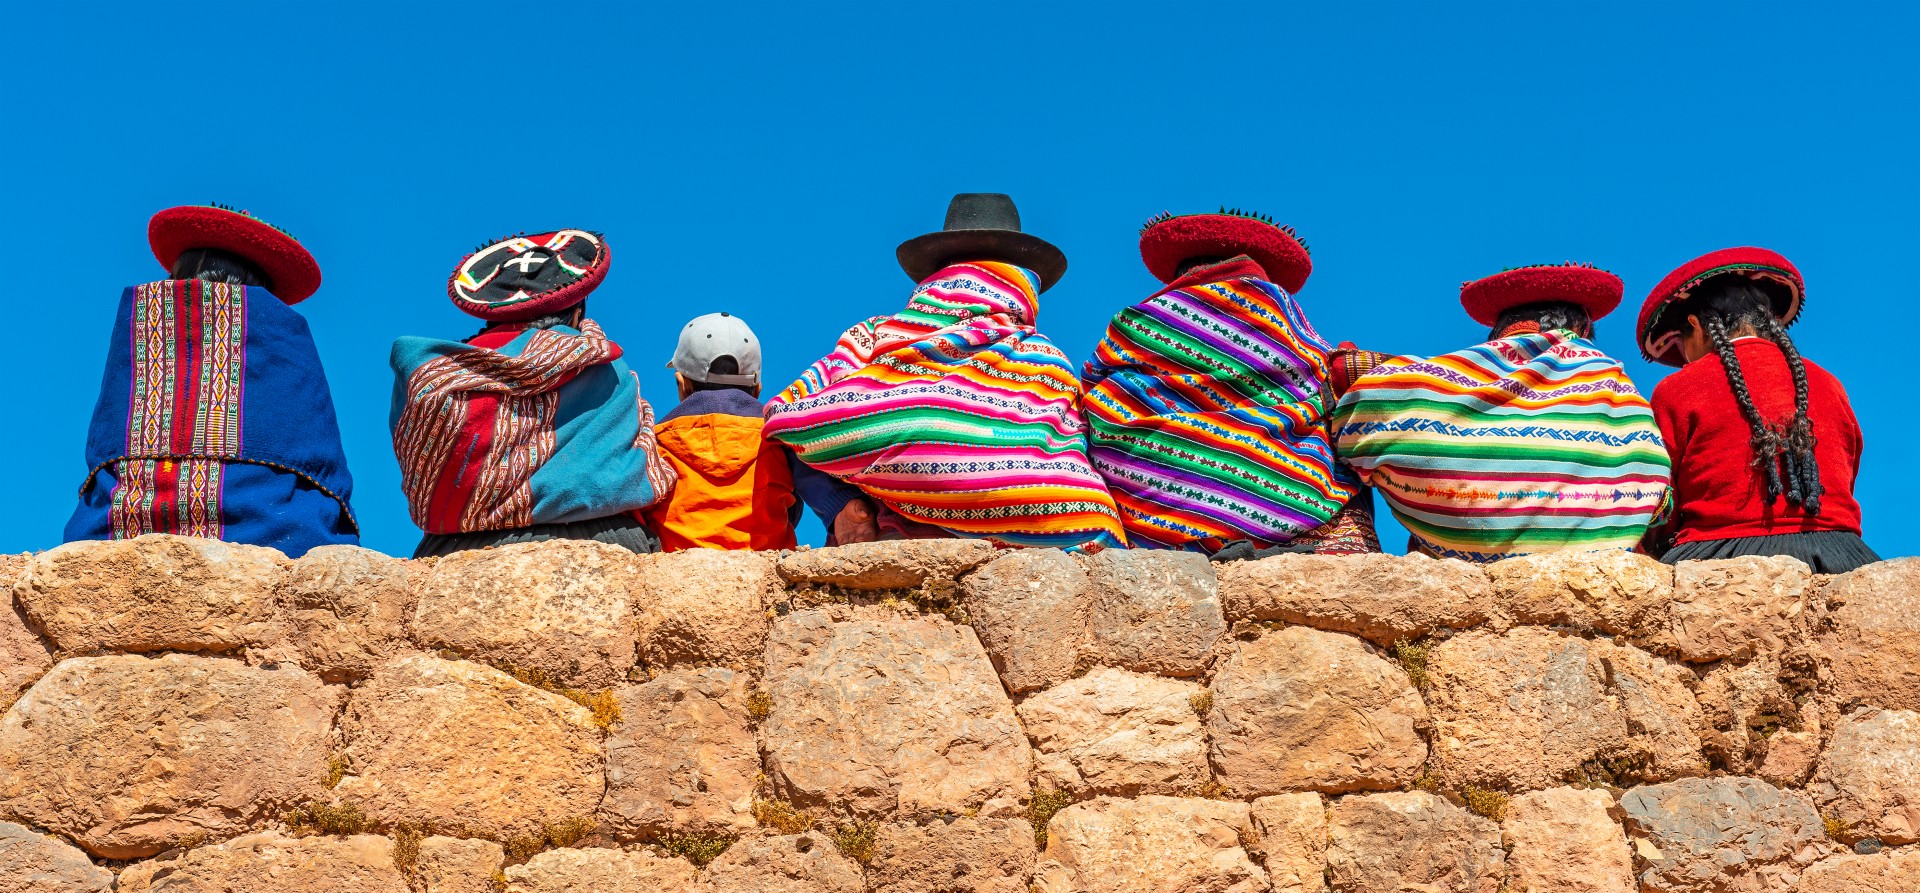 Indigenous women in Peru